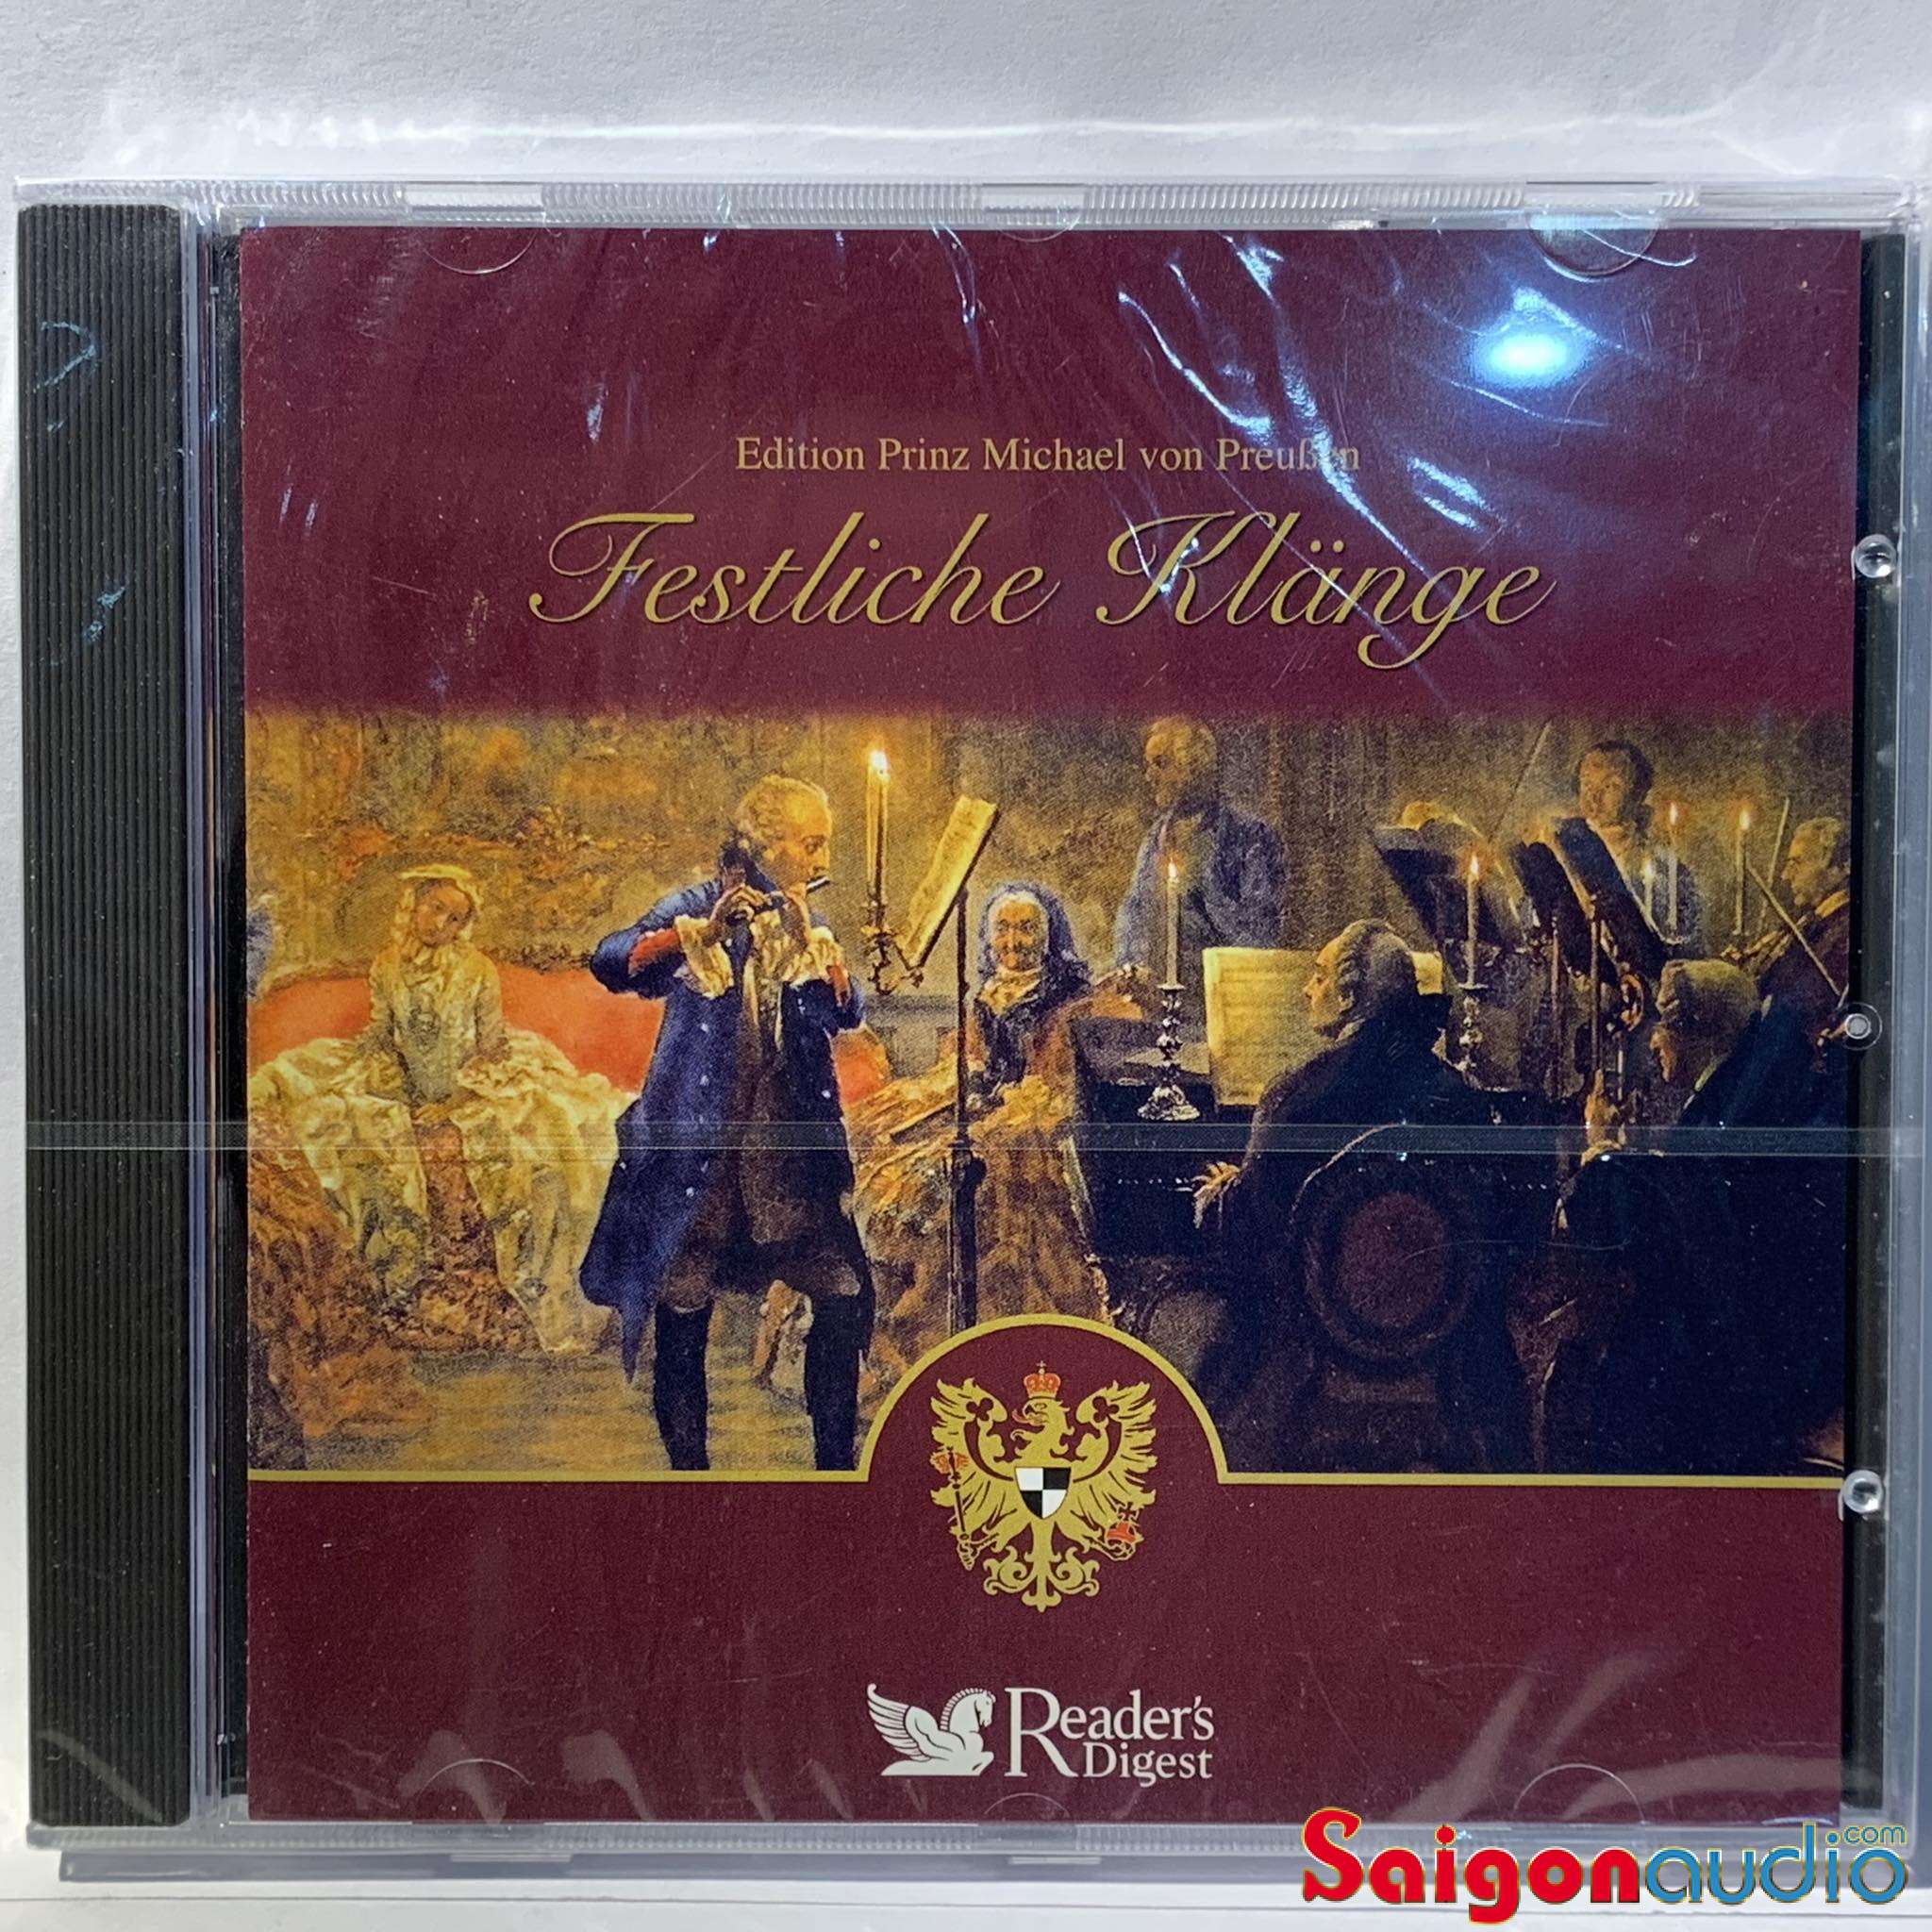 Đĩa CD gốc nhạc cổ điển Festliche Klänge - Edition Prinz Michael Von Preußen - Readers Digest (Free ship khi mua 2 đĩa CD cùng hoặc khác loại)